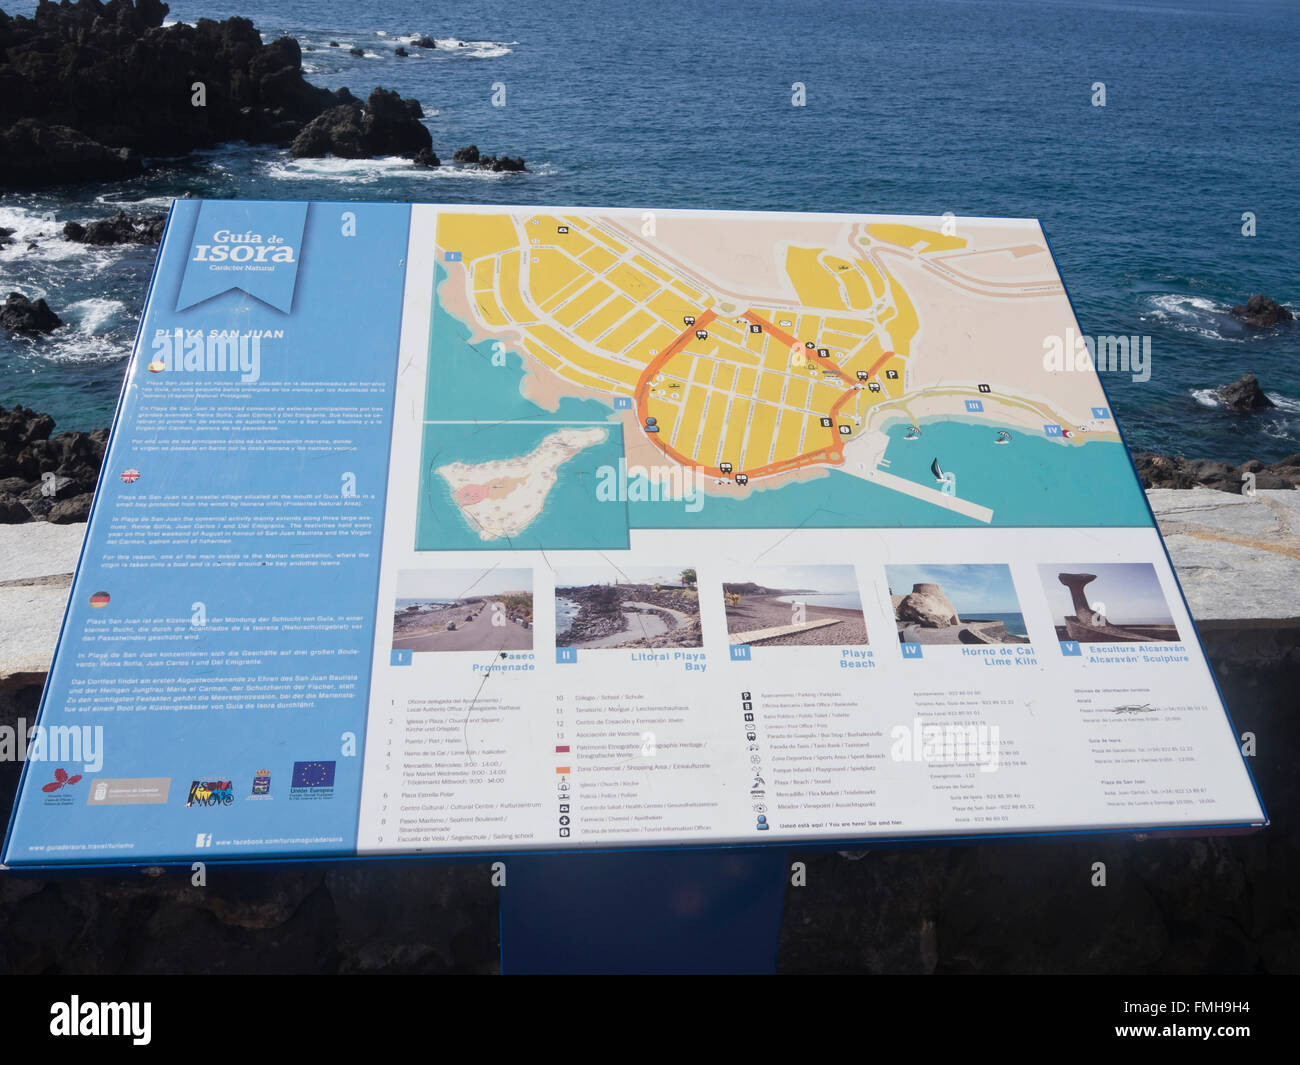 Conseil de l'information et de la ville sur la promenade du bord de mer à Playa San Juan, Tenerife Espagne Banque D'Images